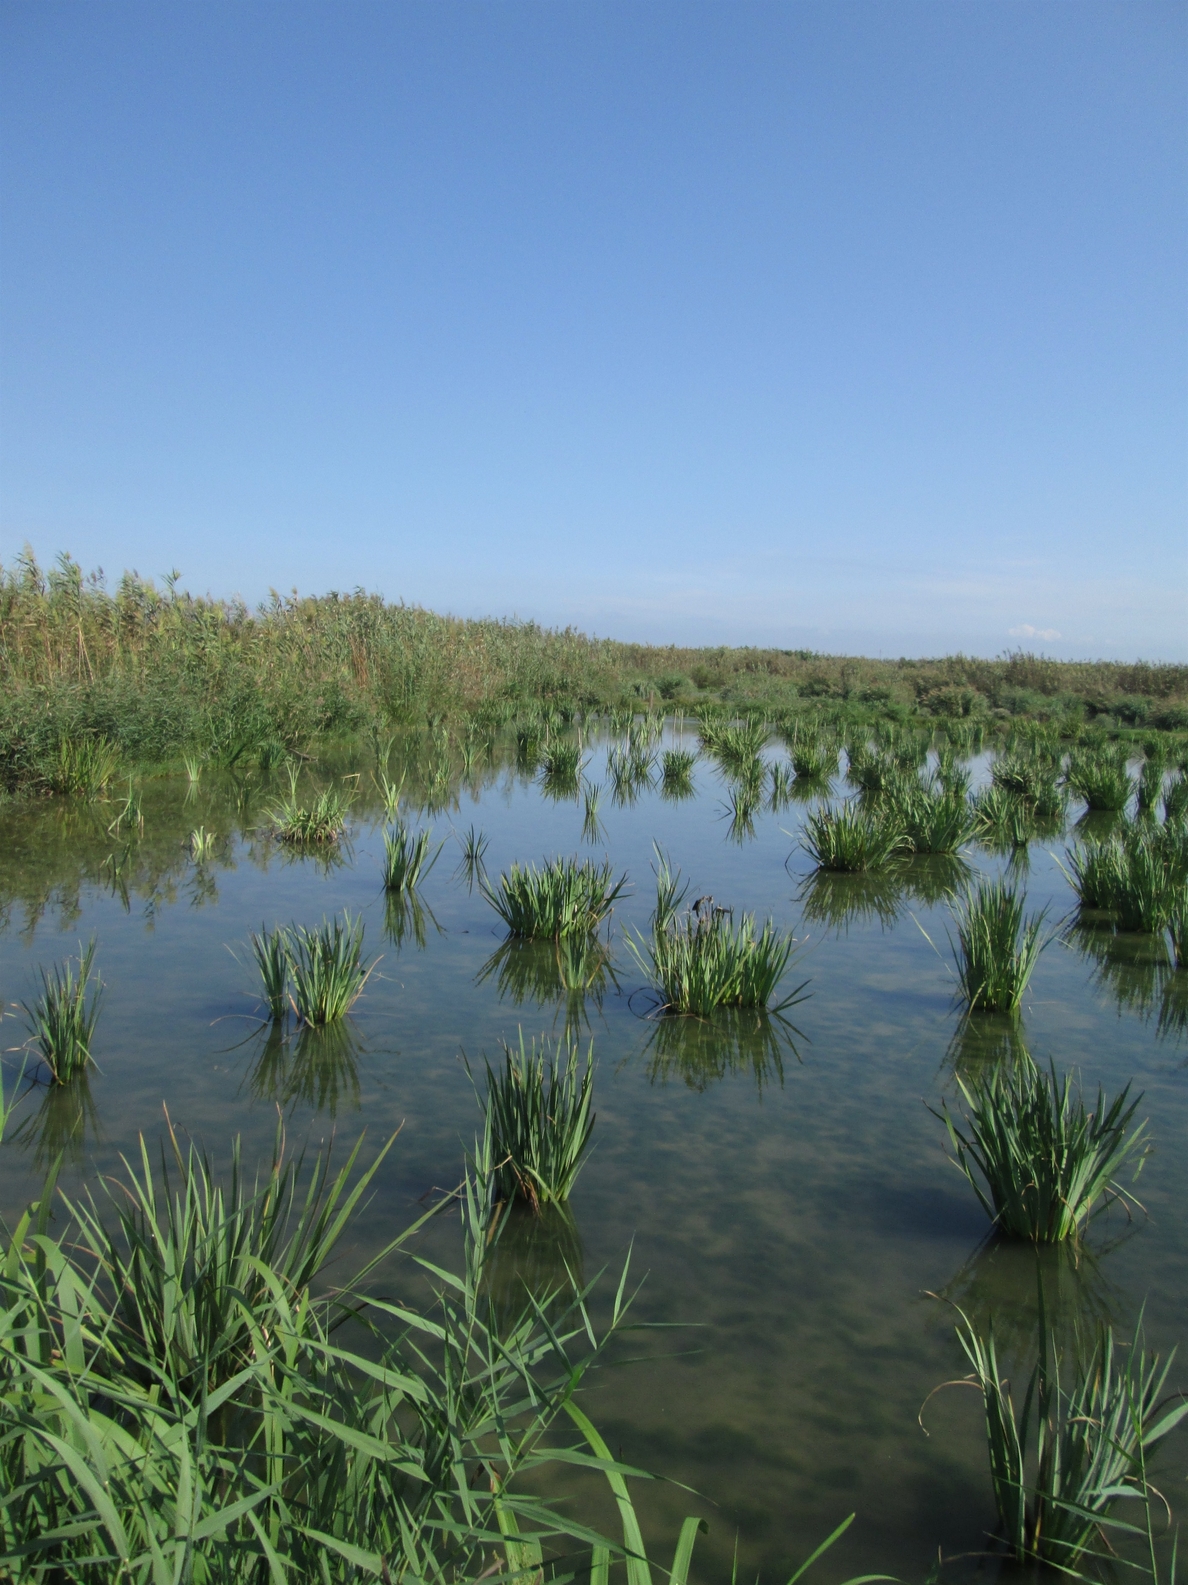 La Confederación del Júcar transforma un arrozal de la Albufera (Valencia) en varios humedales